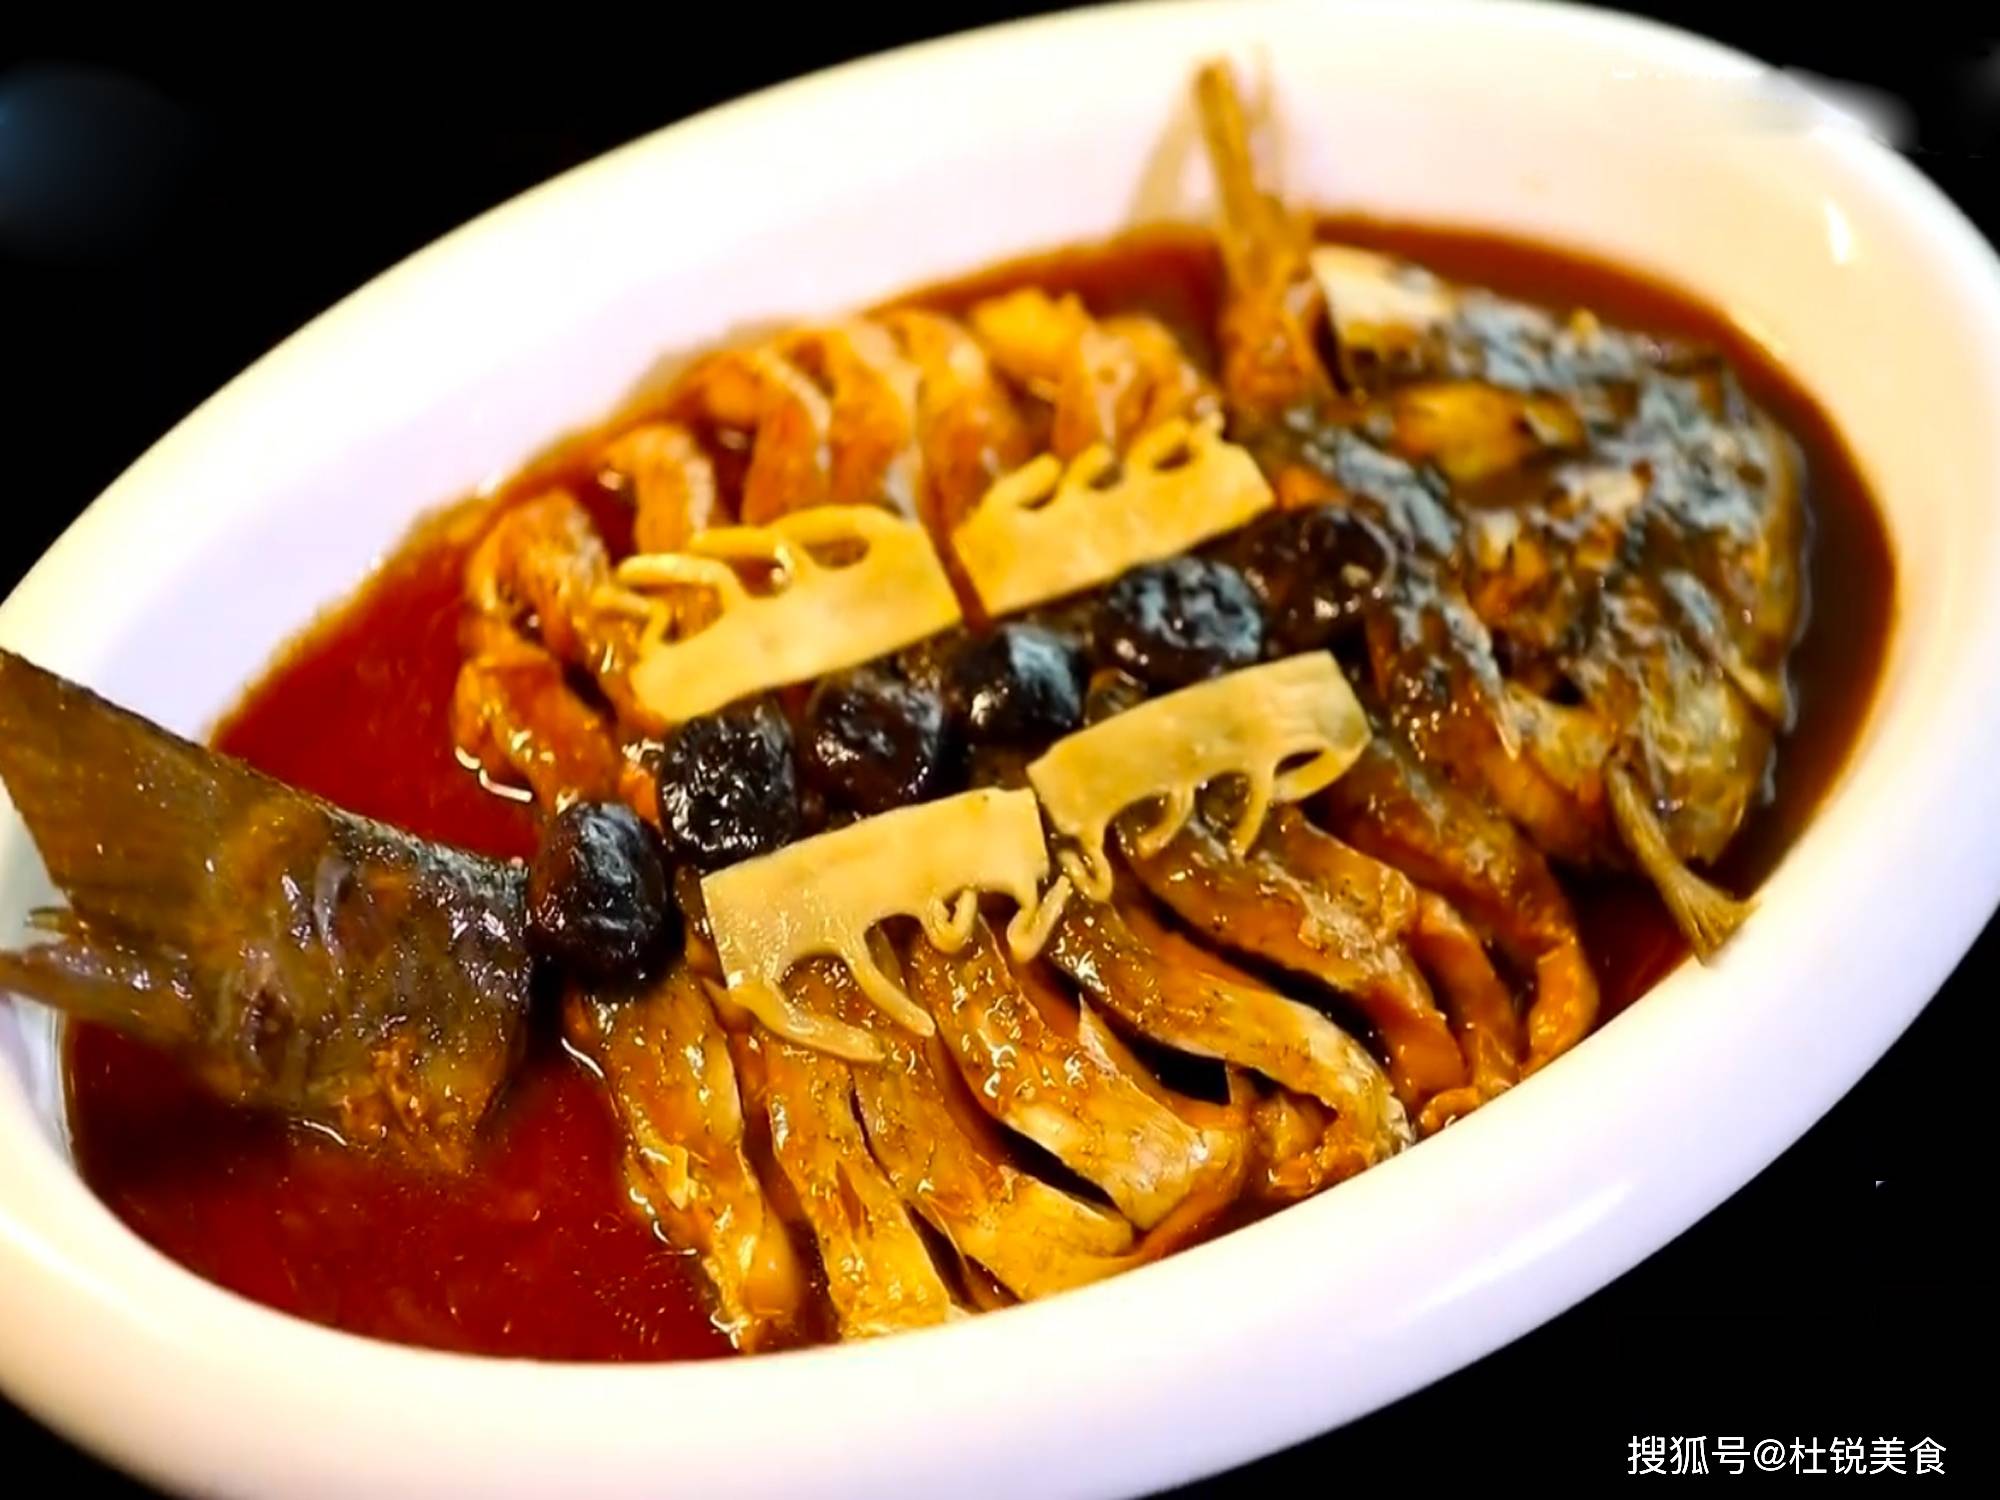 牡丹燕菜怎么做_牡丹燕菜的做法_lingling玲食_豆果美食